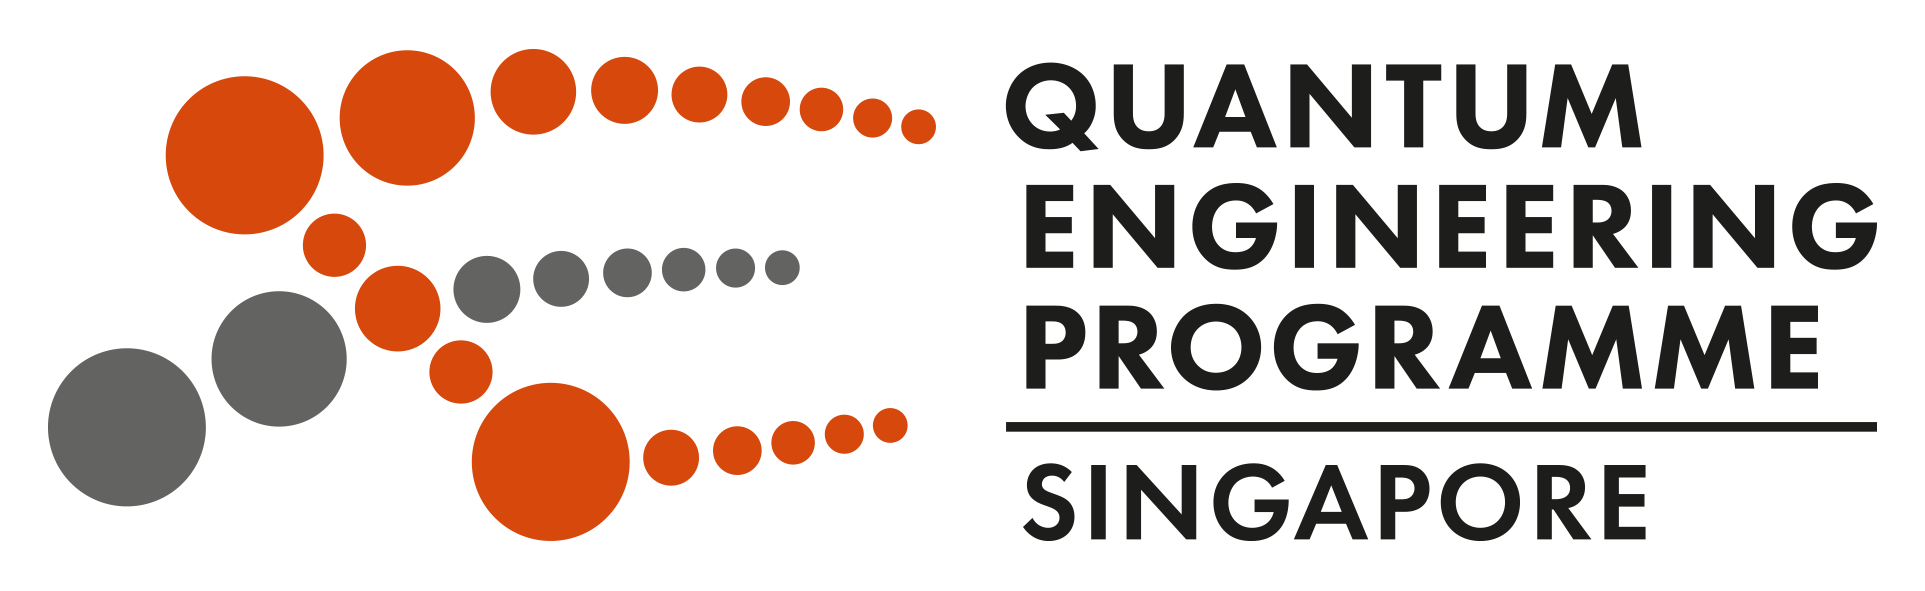 Quantum Engineering Program Singapore